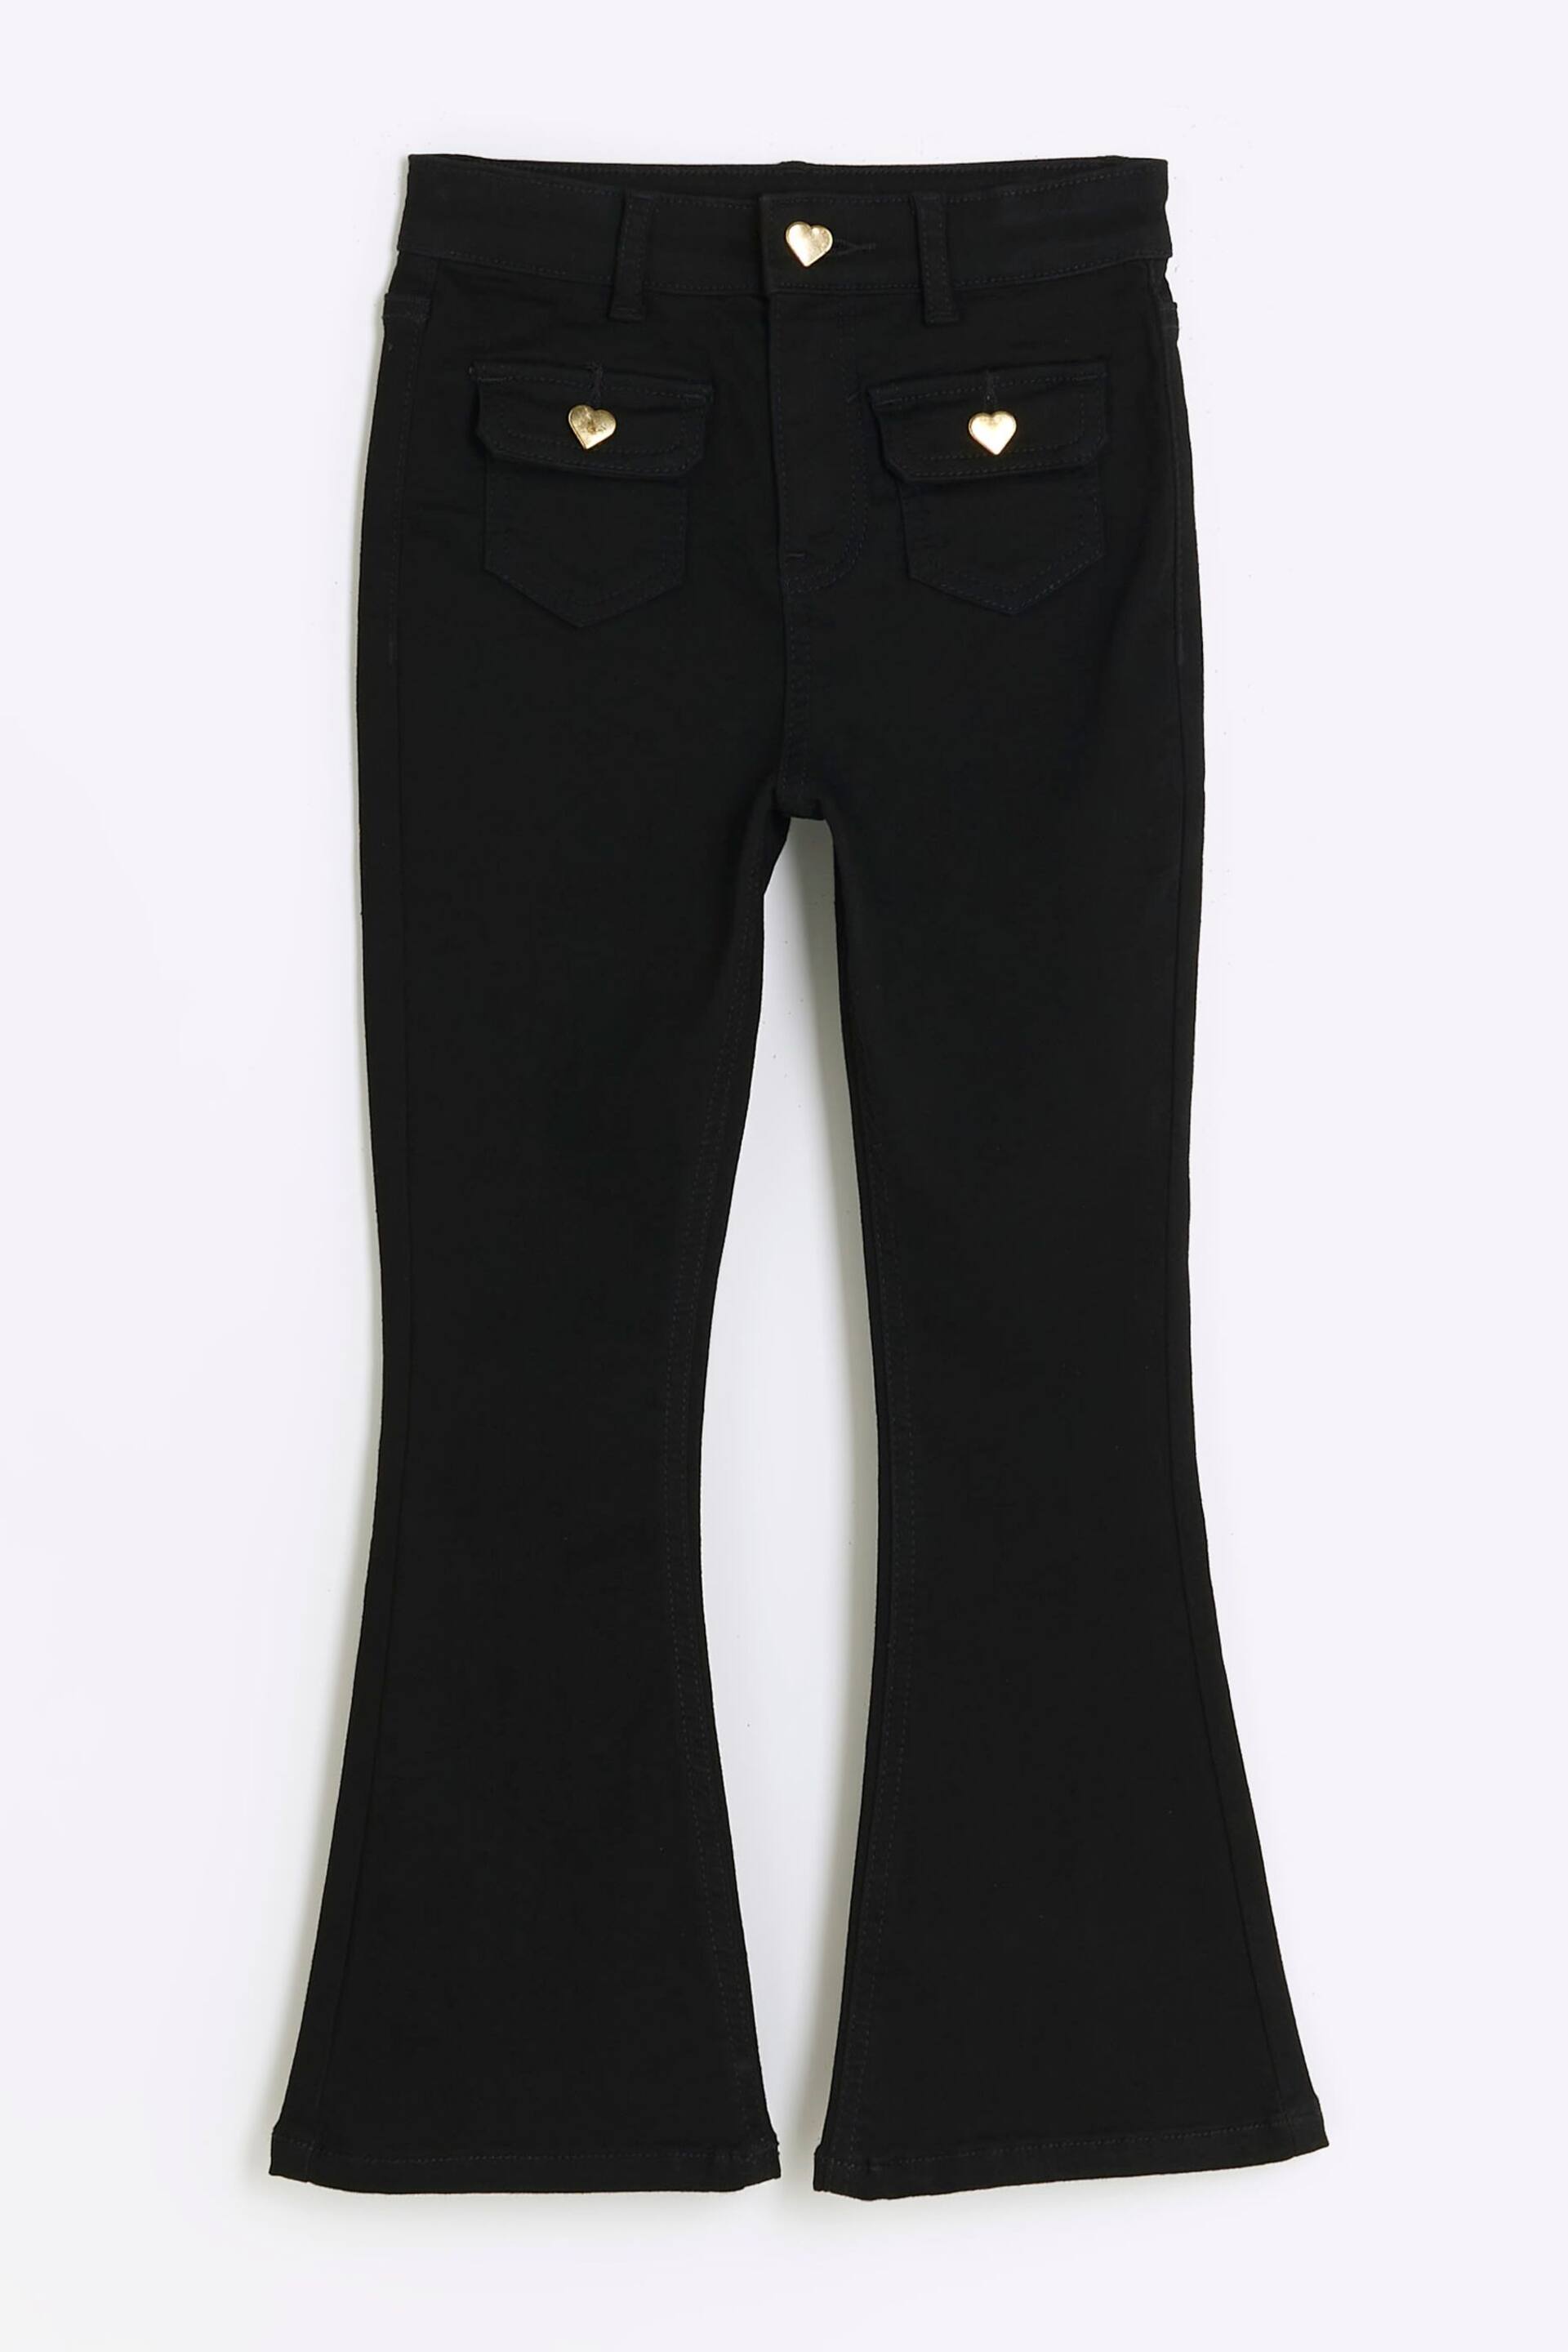 River Island Black Girls Pocket Front Flare Jeans - Image 1 of 3